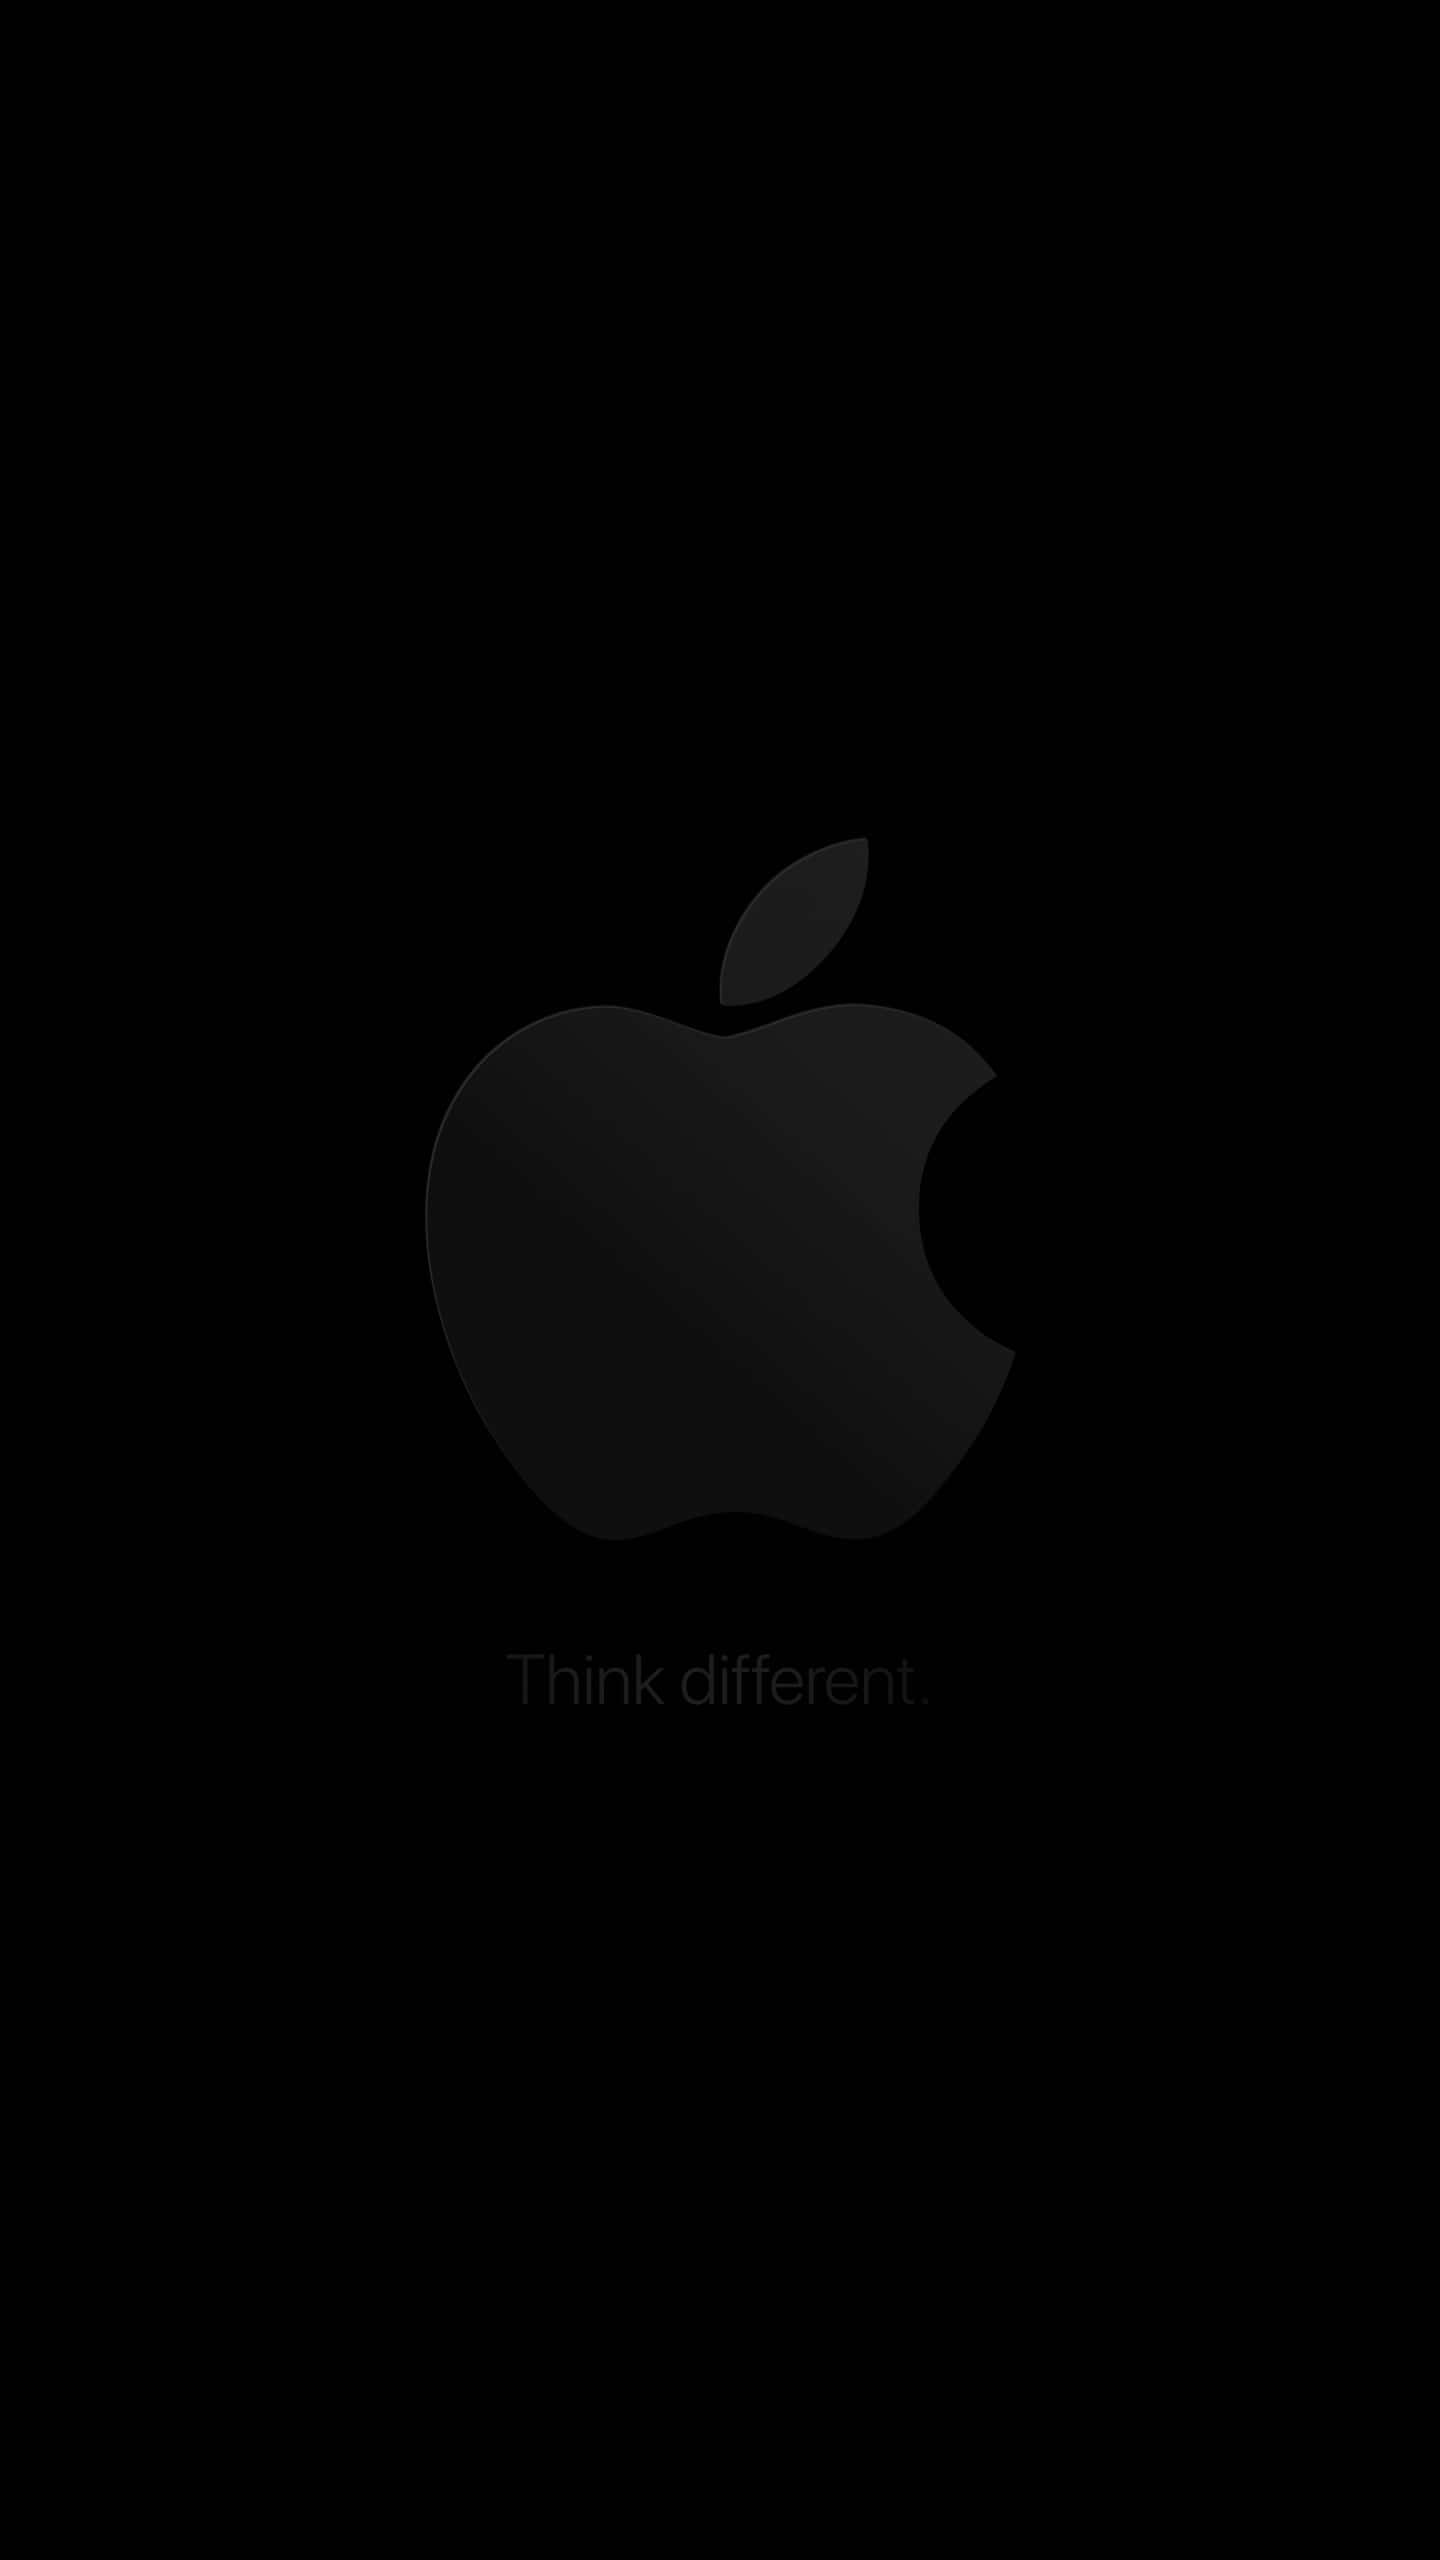 Logotipoda Apple Em Tamanho 1440 X 2560 Como Plano De Fundo.